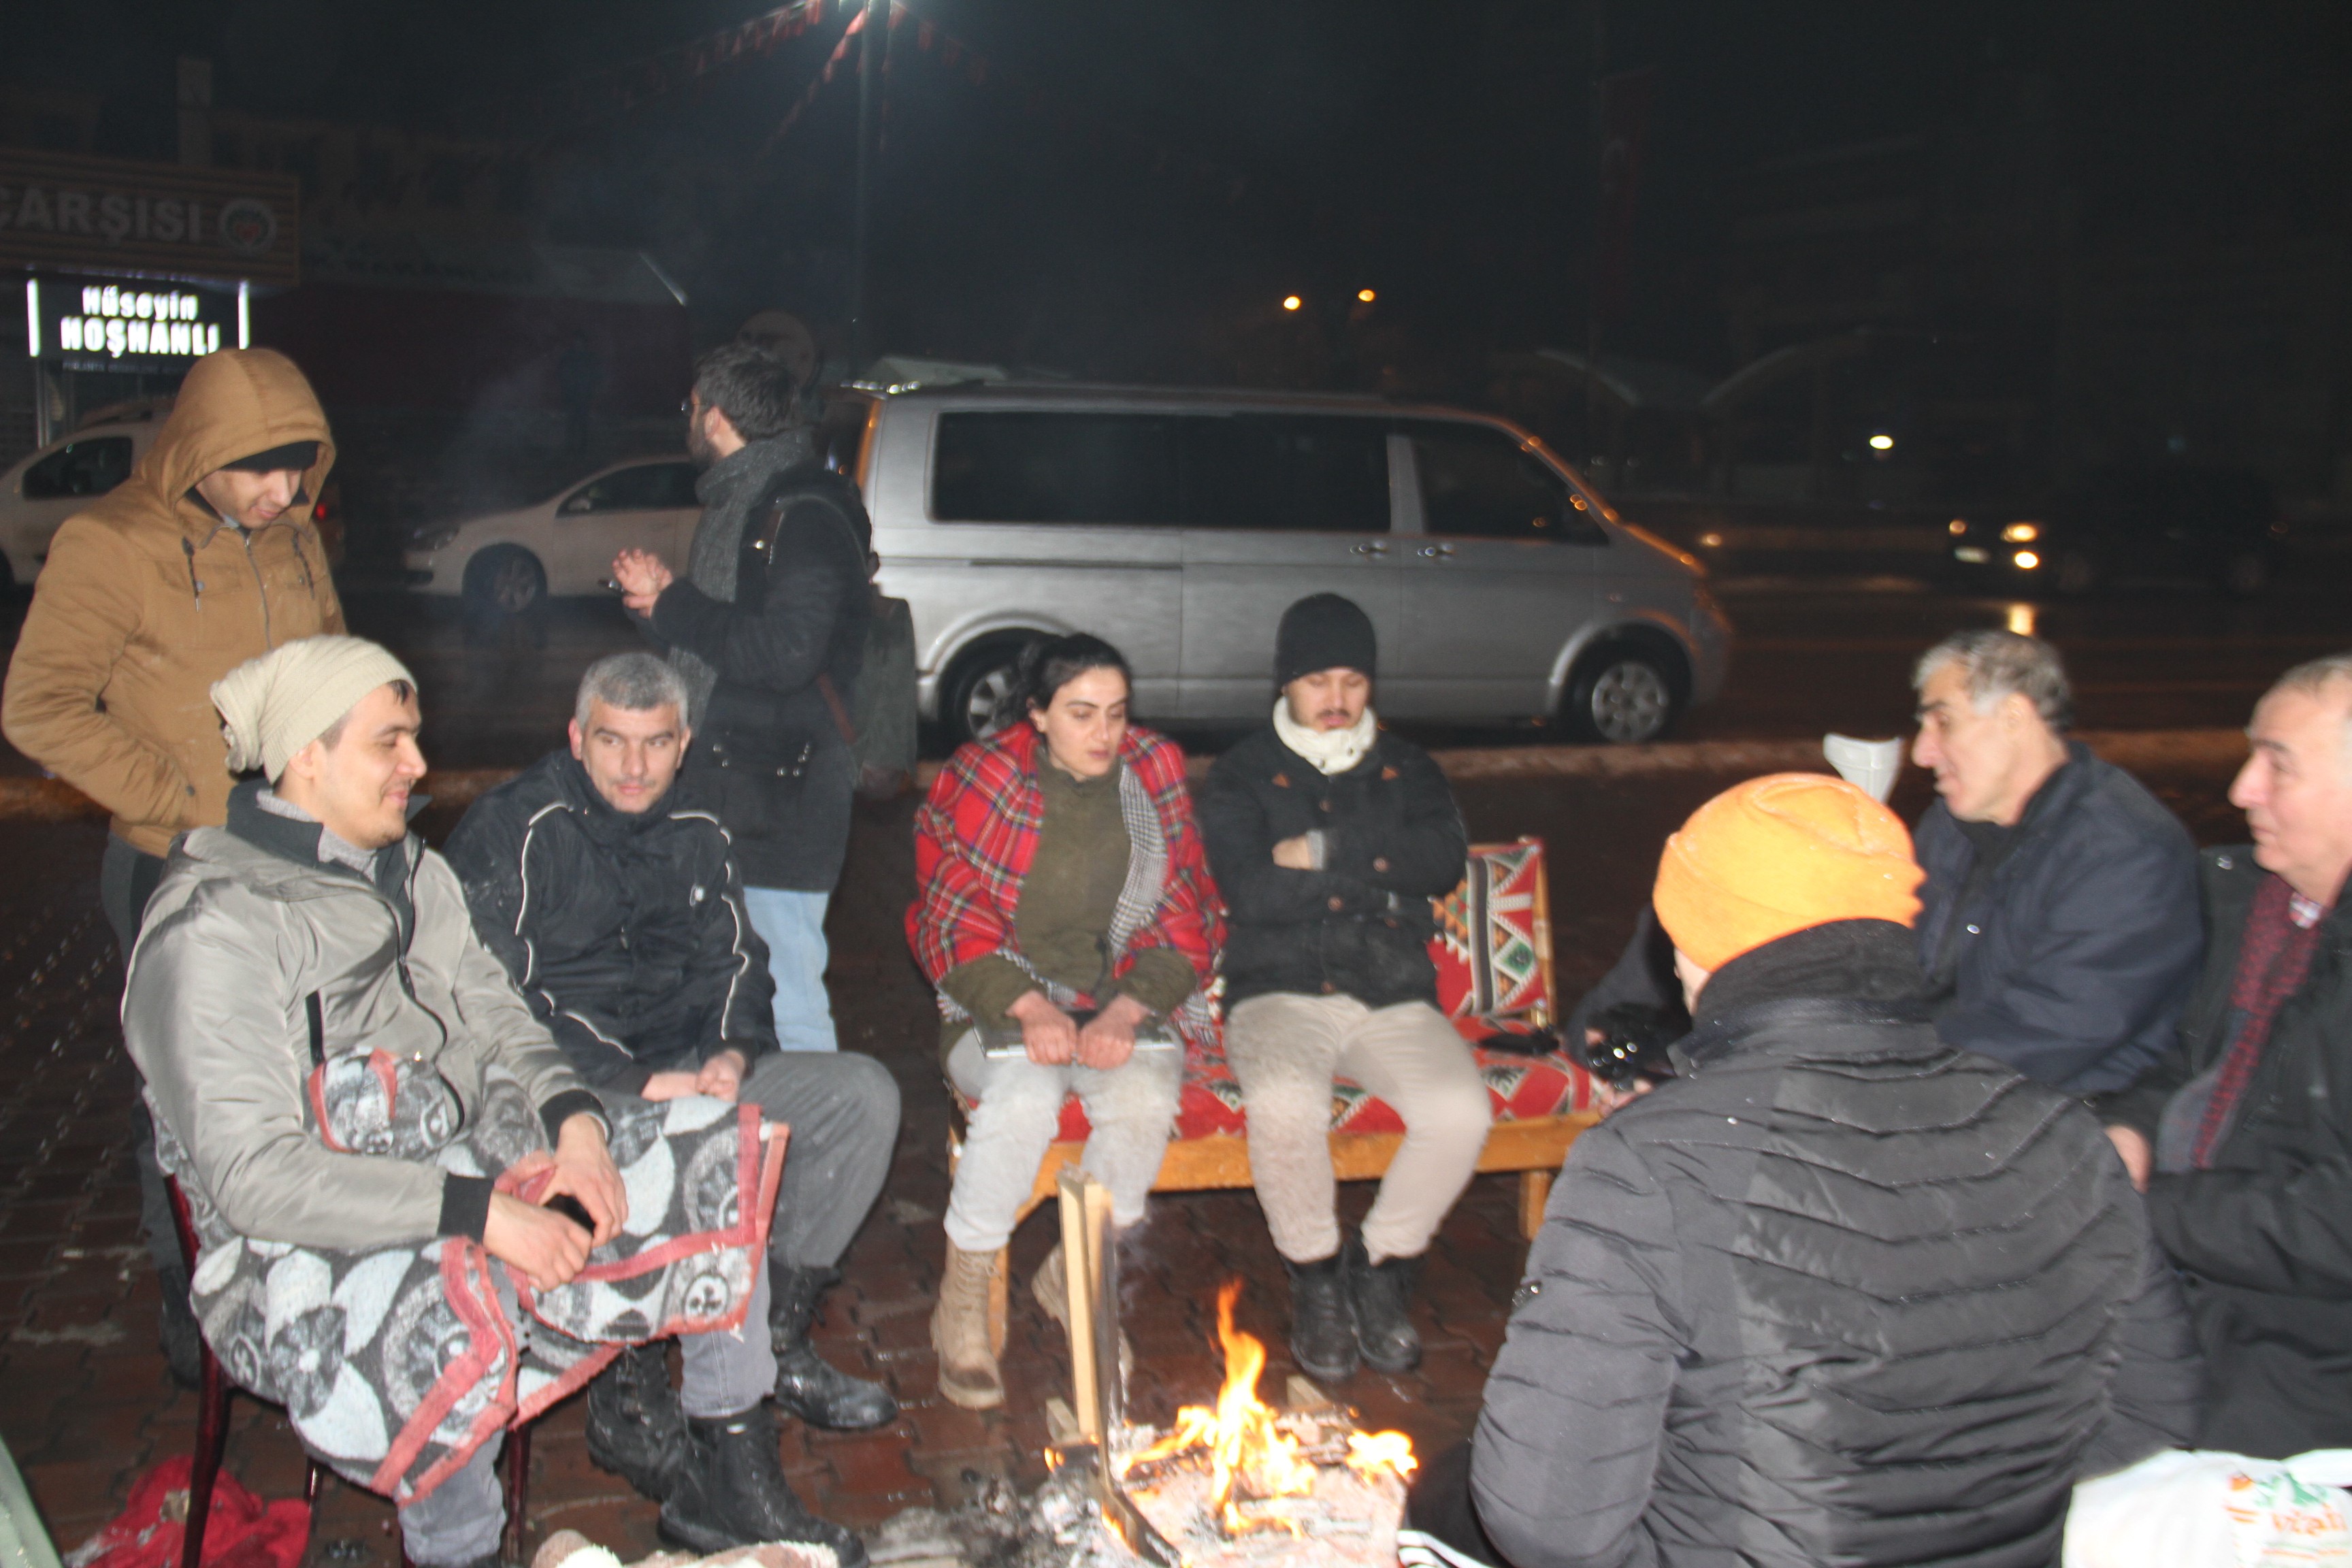 Depremden etkilenen vatandaşlar akşamı dışarıda geçiriyor